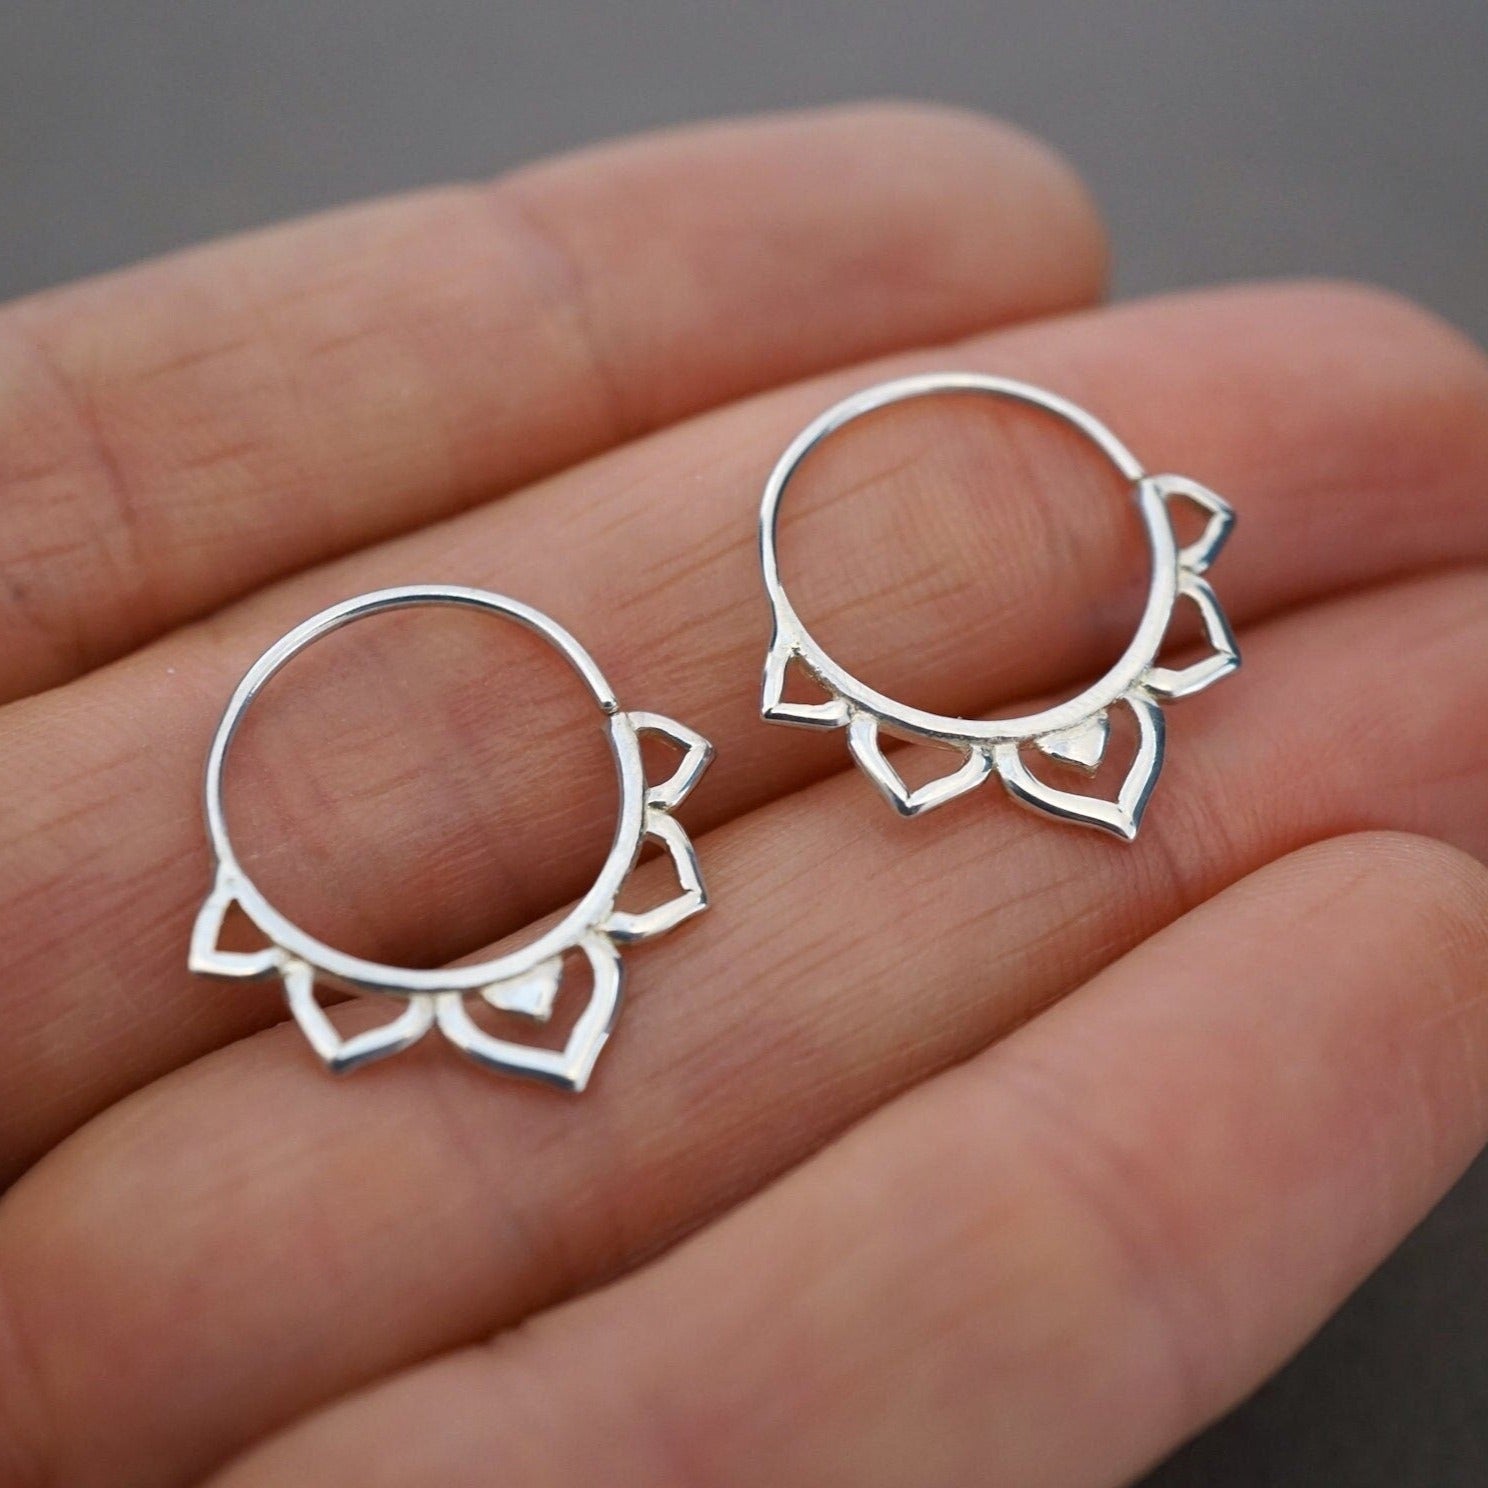 Star Flower Earrings - Solid Sterling Silver Hoops - Sleeper hoops - 14mm - One Pair - (296S)